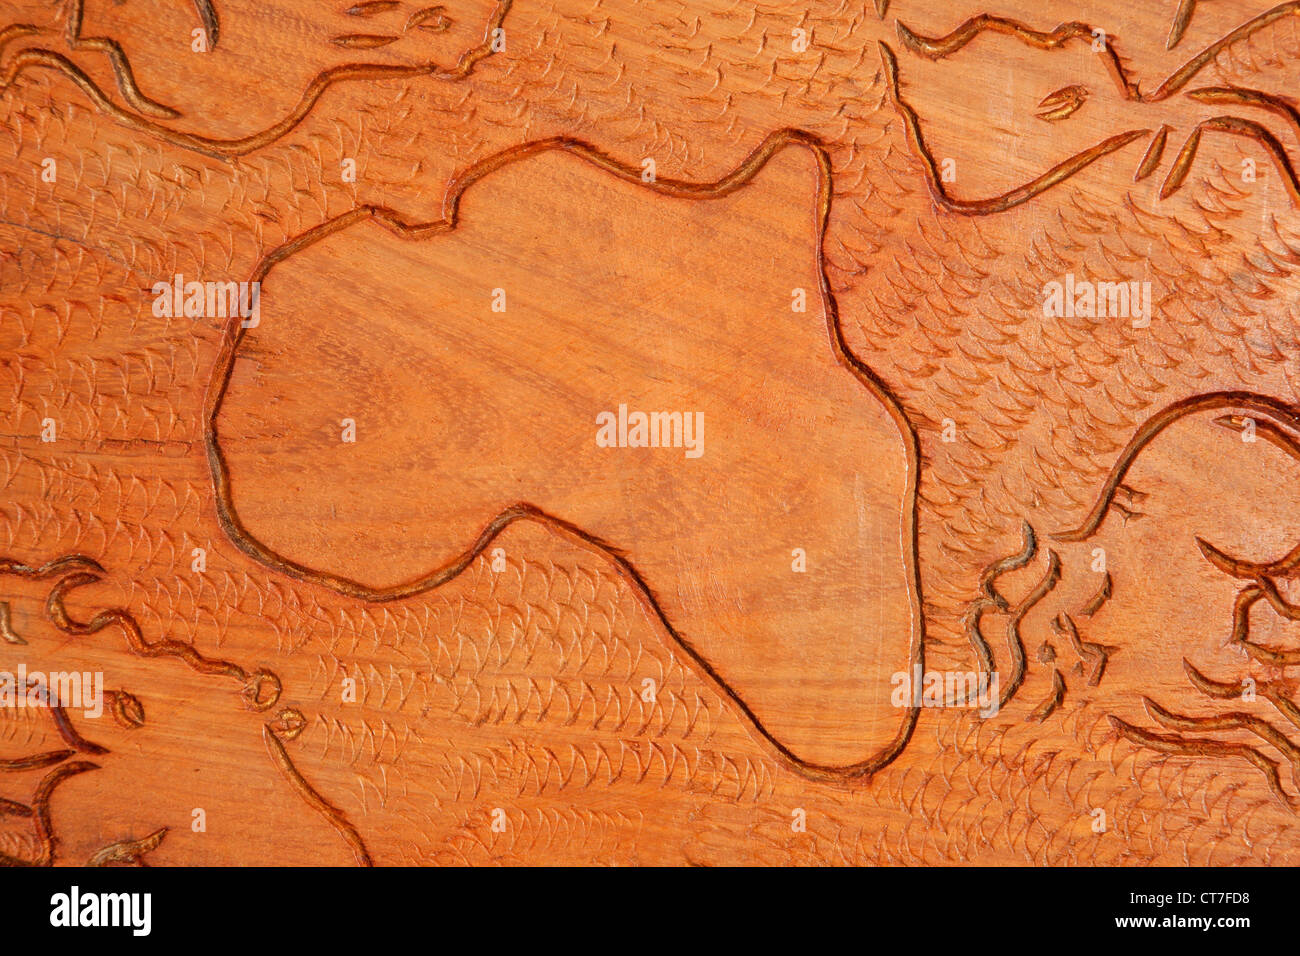 La forma del continente africano y los animales africanos tallados en madera Foto de stock